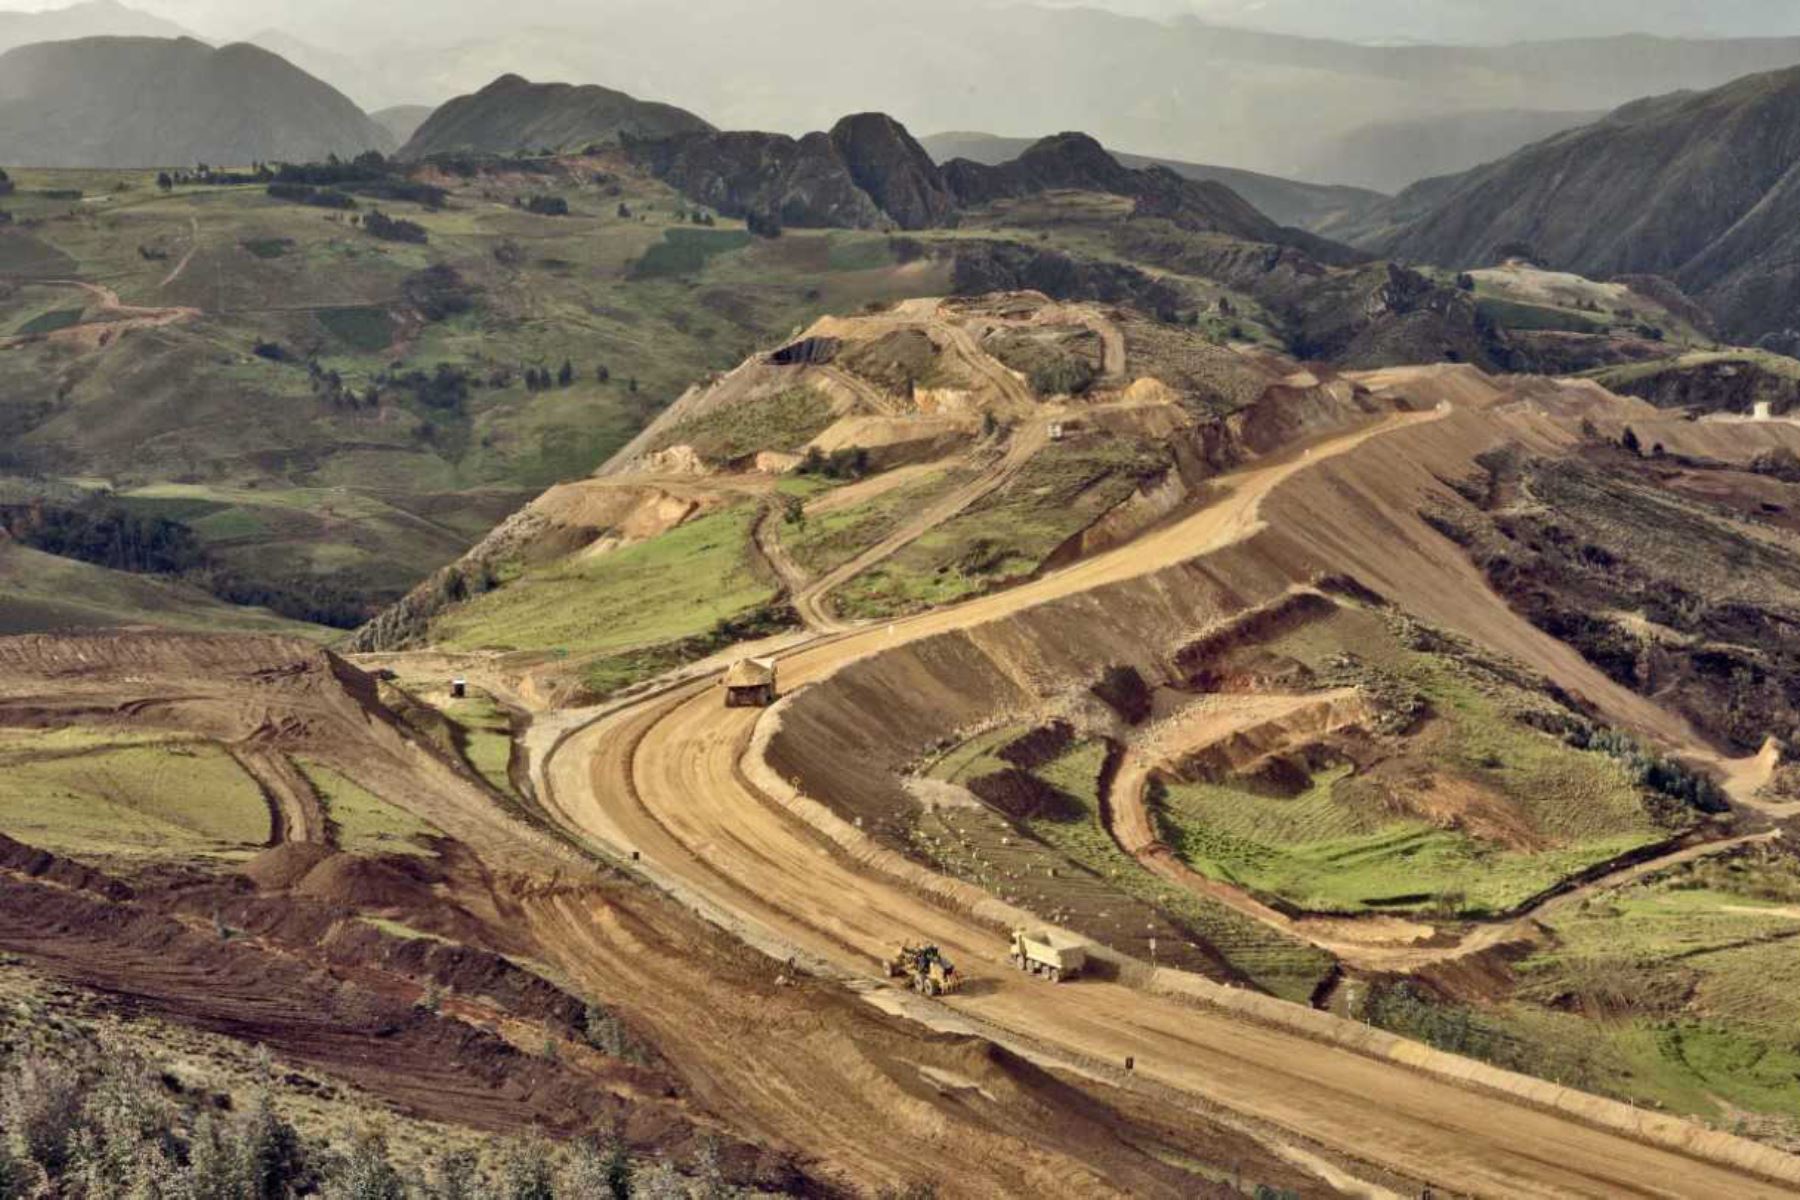 Entre enero y mayo de este año, las transferencias de recursos a las regiones de todo el Perú, producto de regalías mineras y derechos de vigencia y penalidad de esta actividad económica, ascendieron a 757.5 millones de soles, informó el Ministerio de Energía y Minas (Minem).